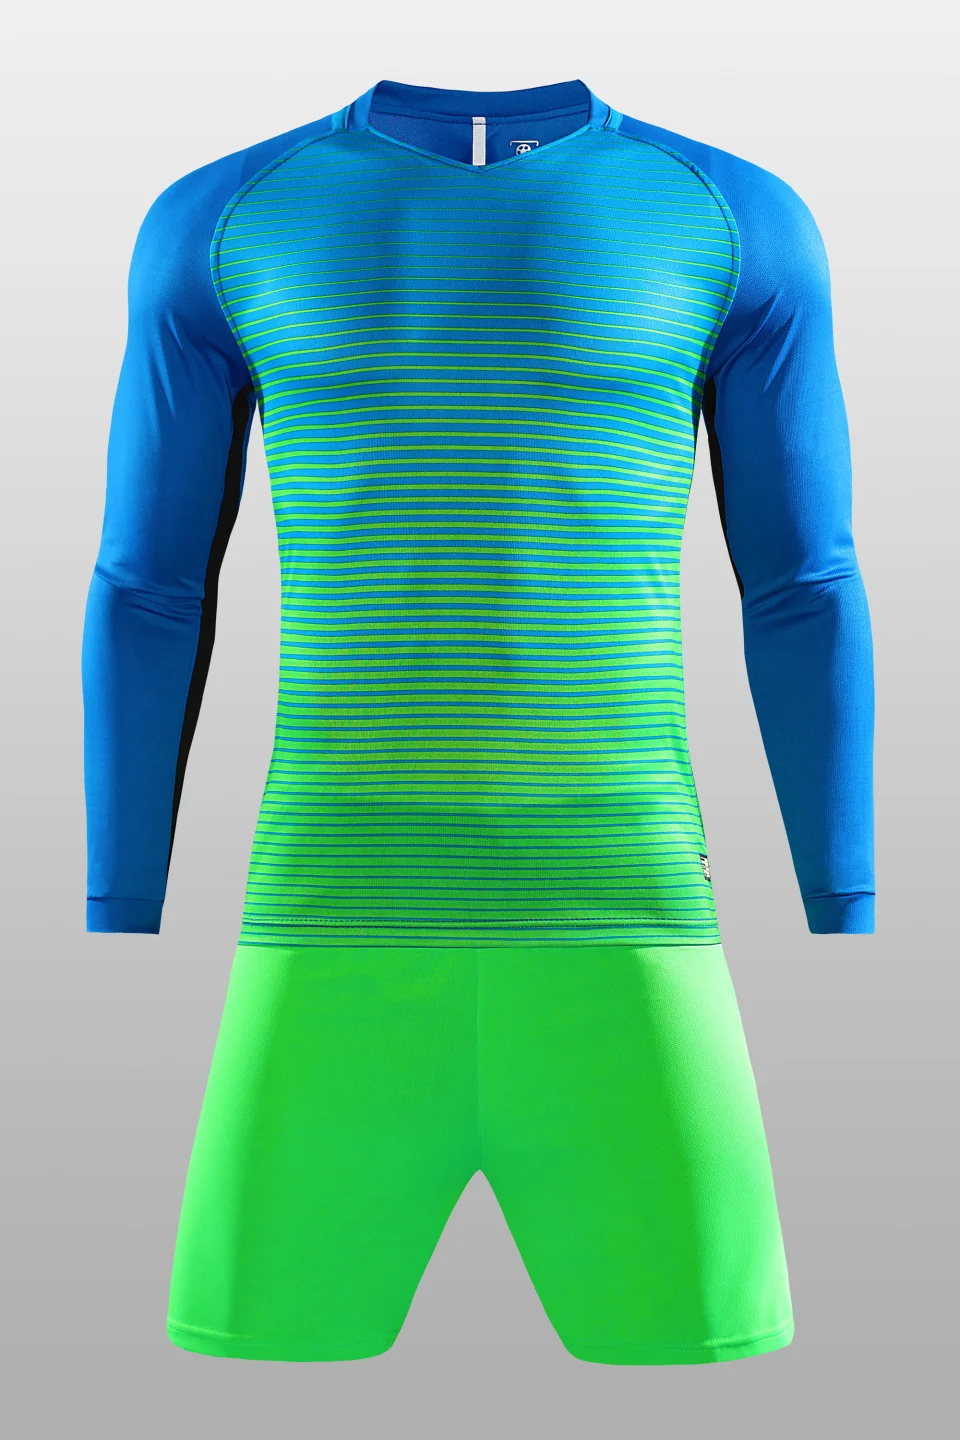 Survetement футбольные комплекты maillot de foot camisetas futbol тренировочный спортивный костюм для взрослых футбольные майки набор униформы